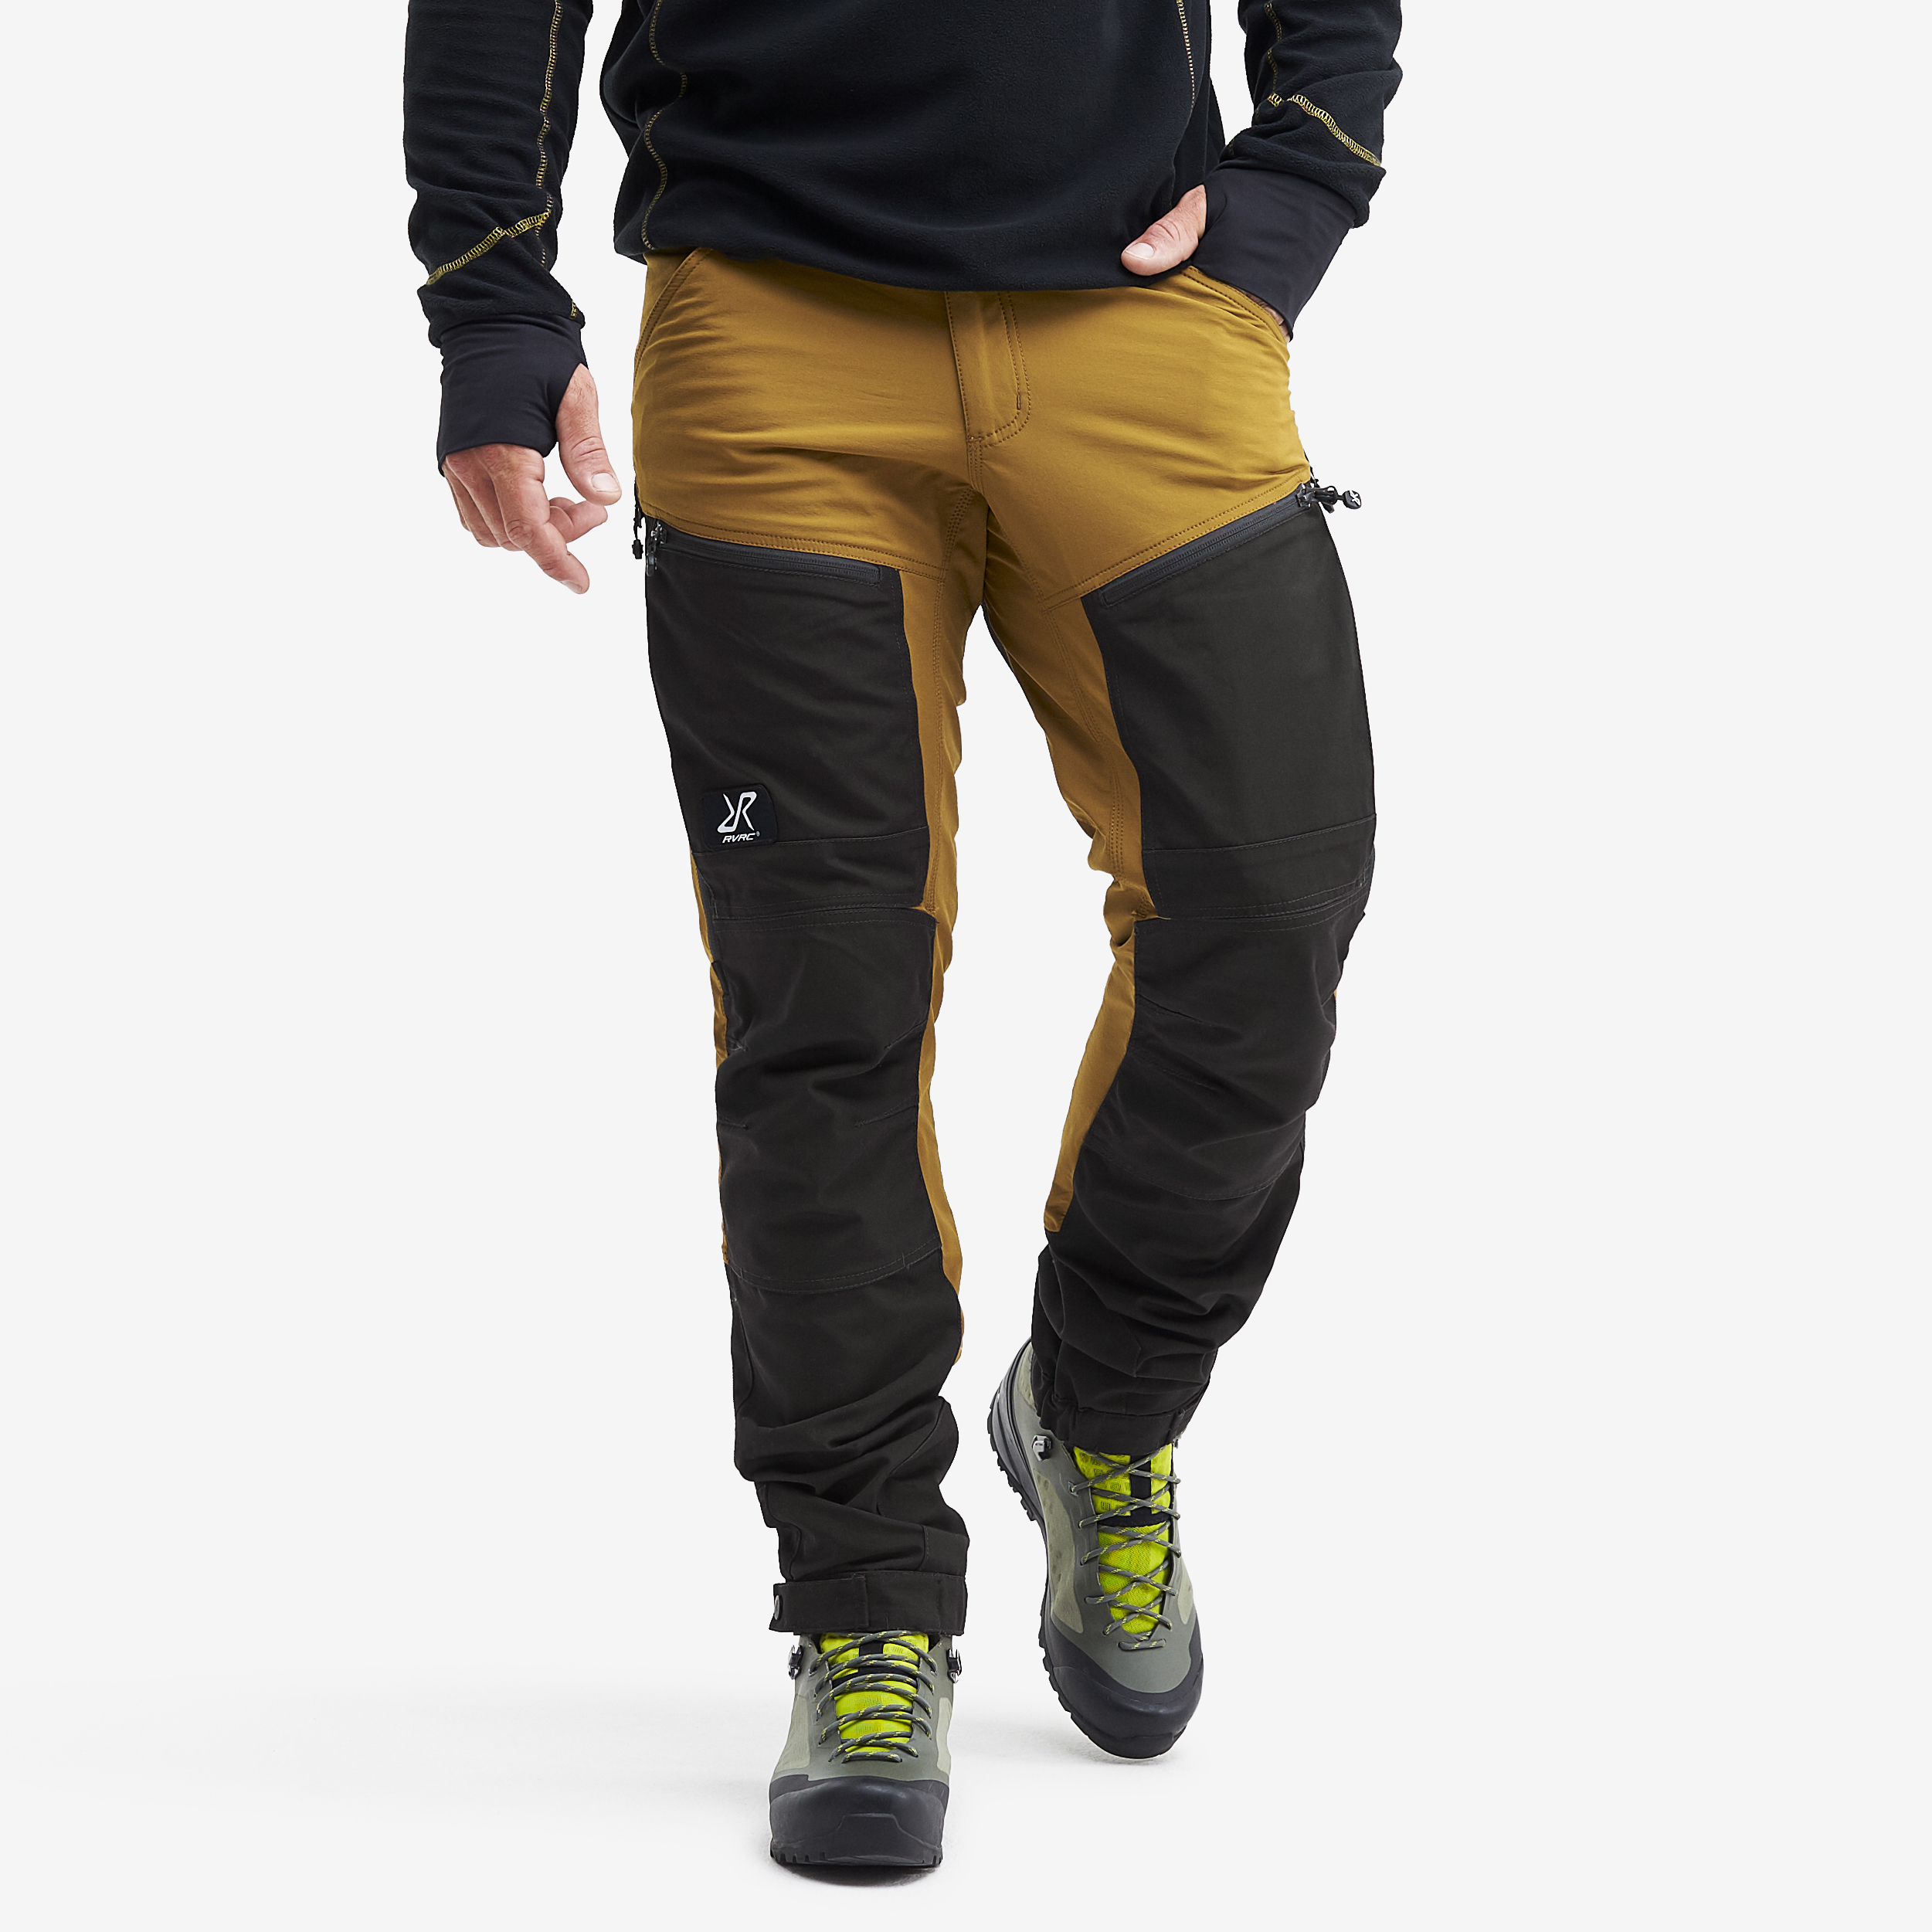 RVRC GP Pro turistické kalhoty pro muže v žluté barvě